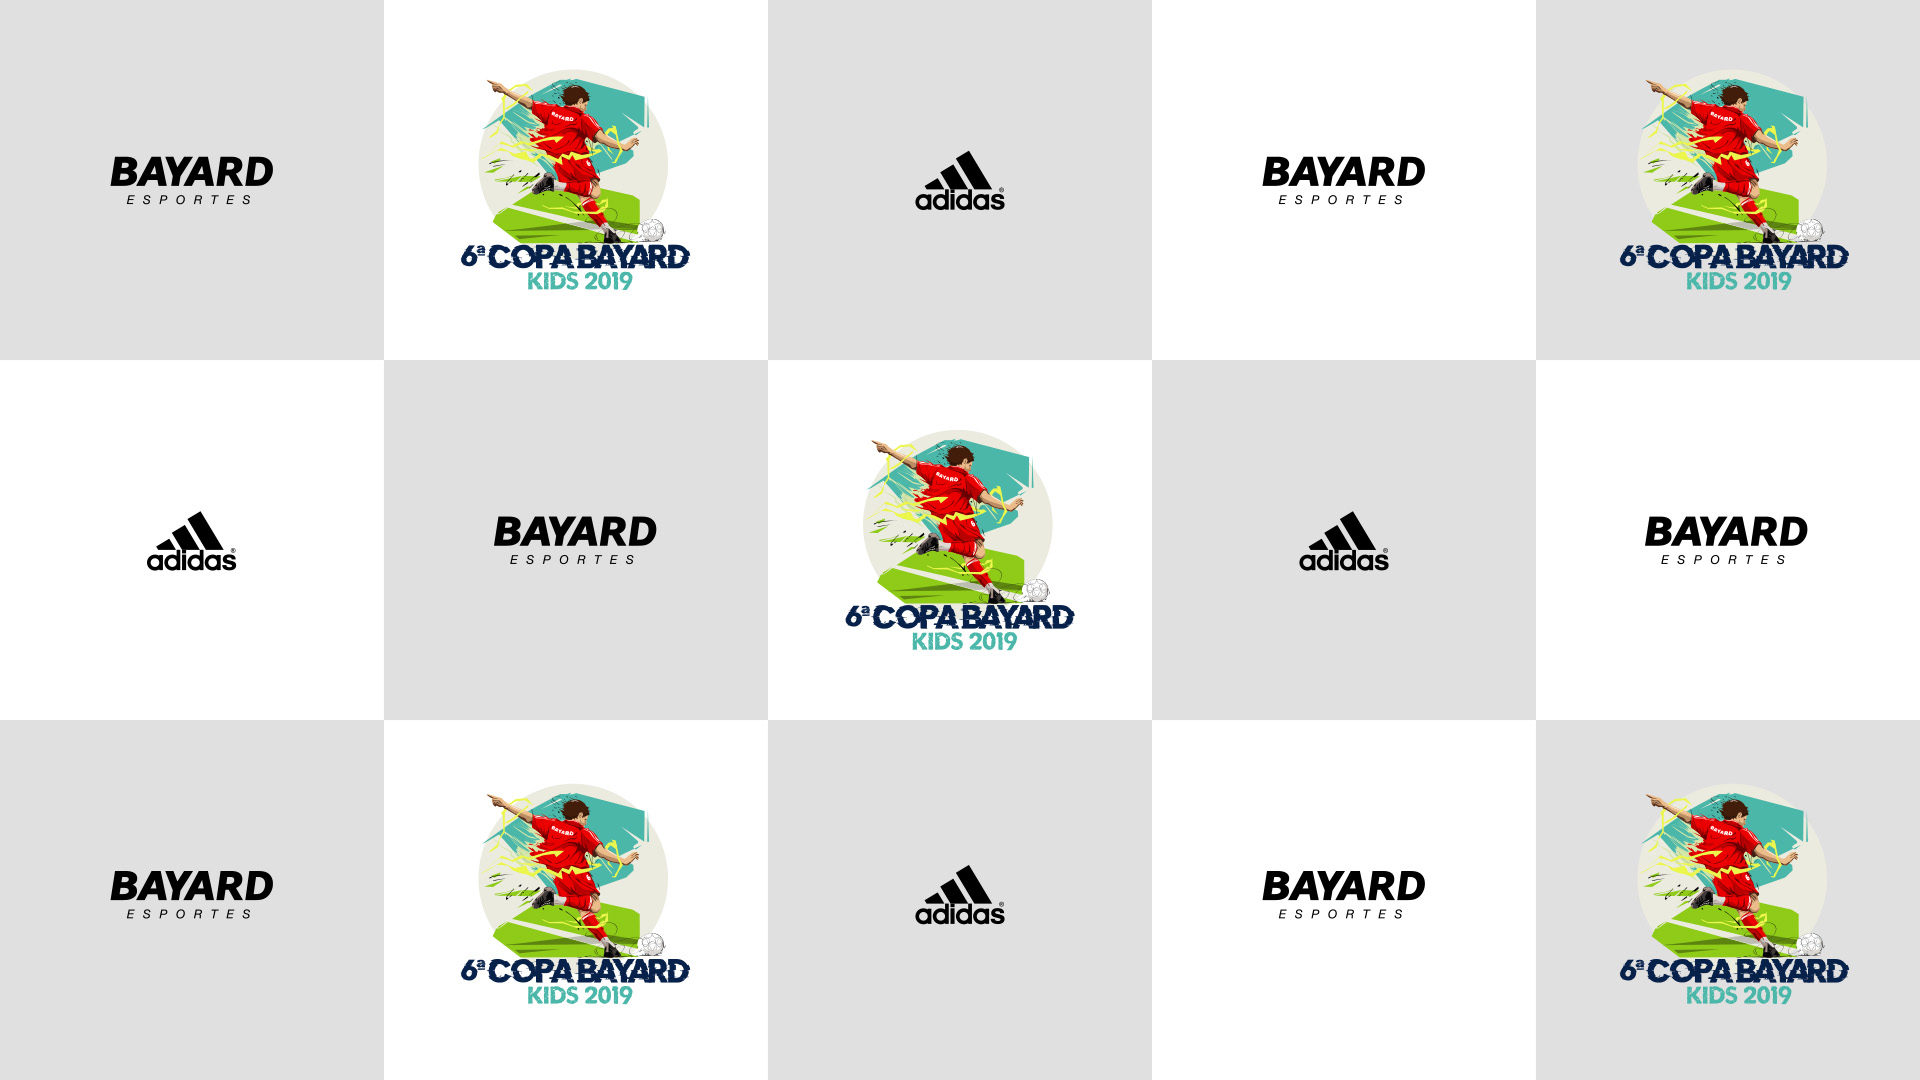 Fundo tipo pattern para locais de entrevistas com o logotipo da 6ª Copa Bayard Kids - Adidas, logotipo Adidas e Logotipo Bayard.